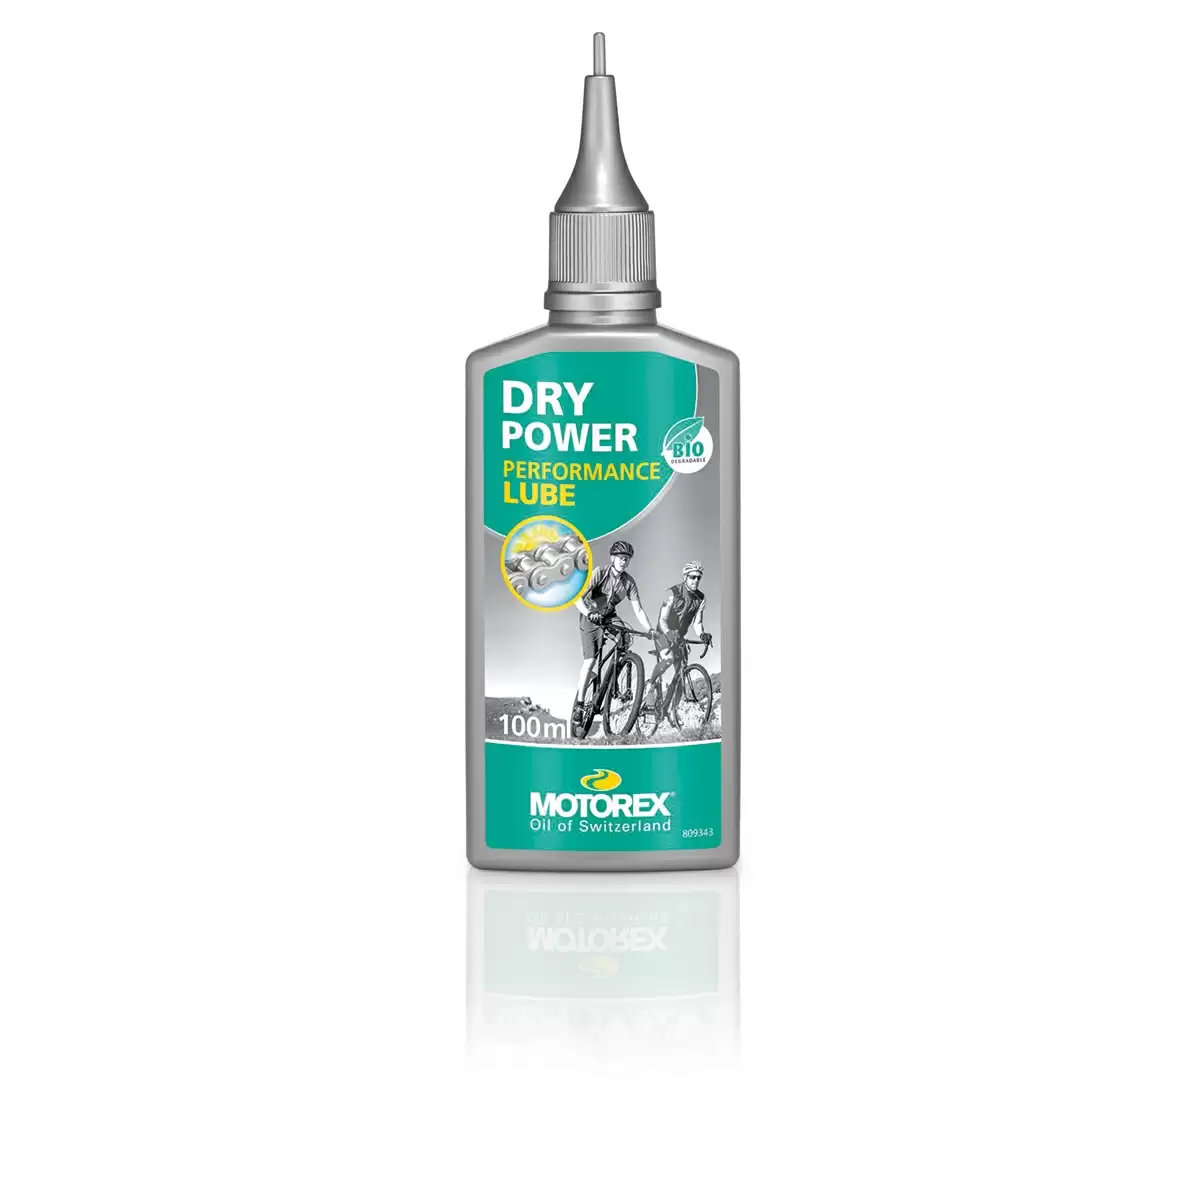 Dry Power Lube Bottle 100ml - image